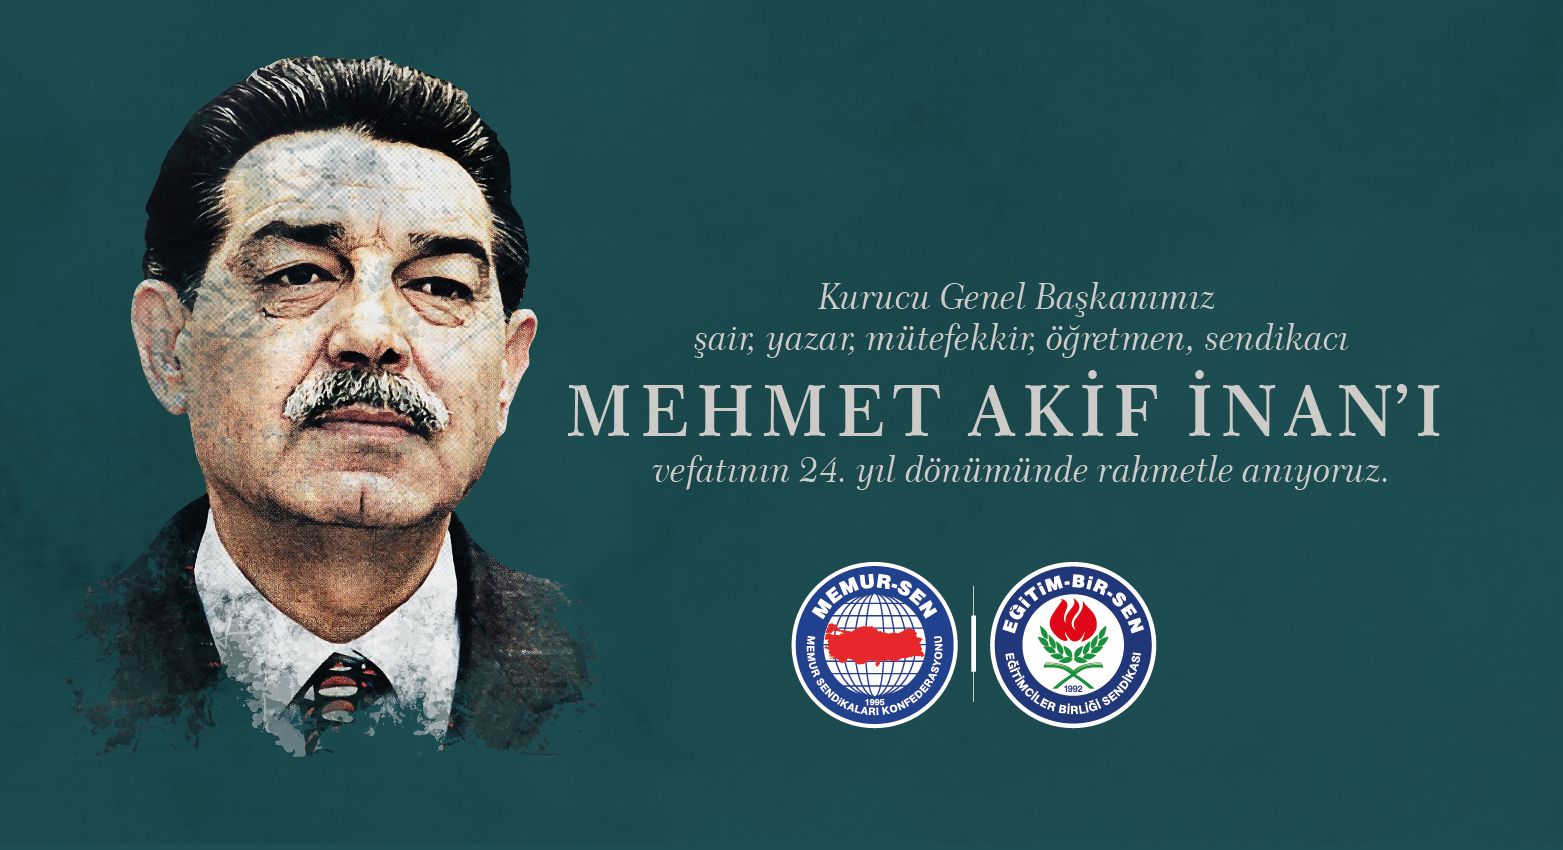 Kurucu genel başkanımız Mehmet Akif İnan’ı rahmetle anıyoruz